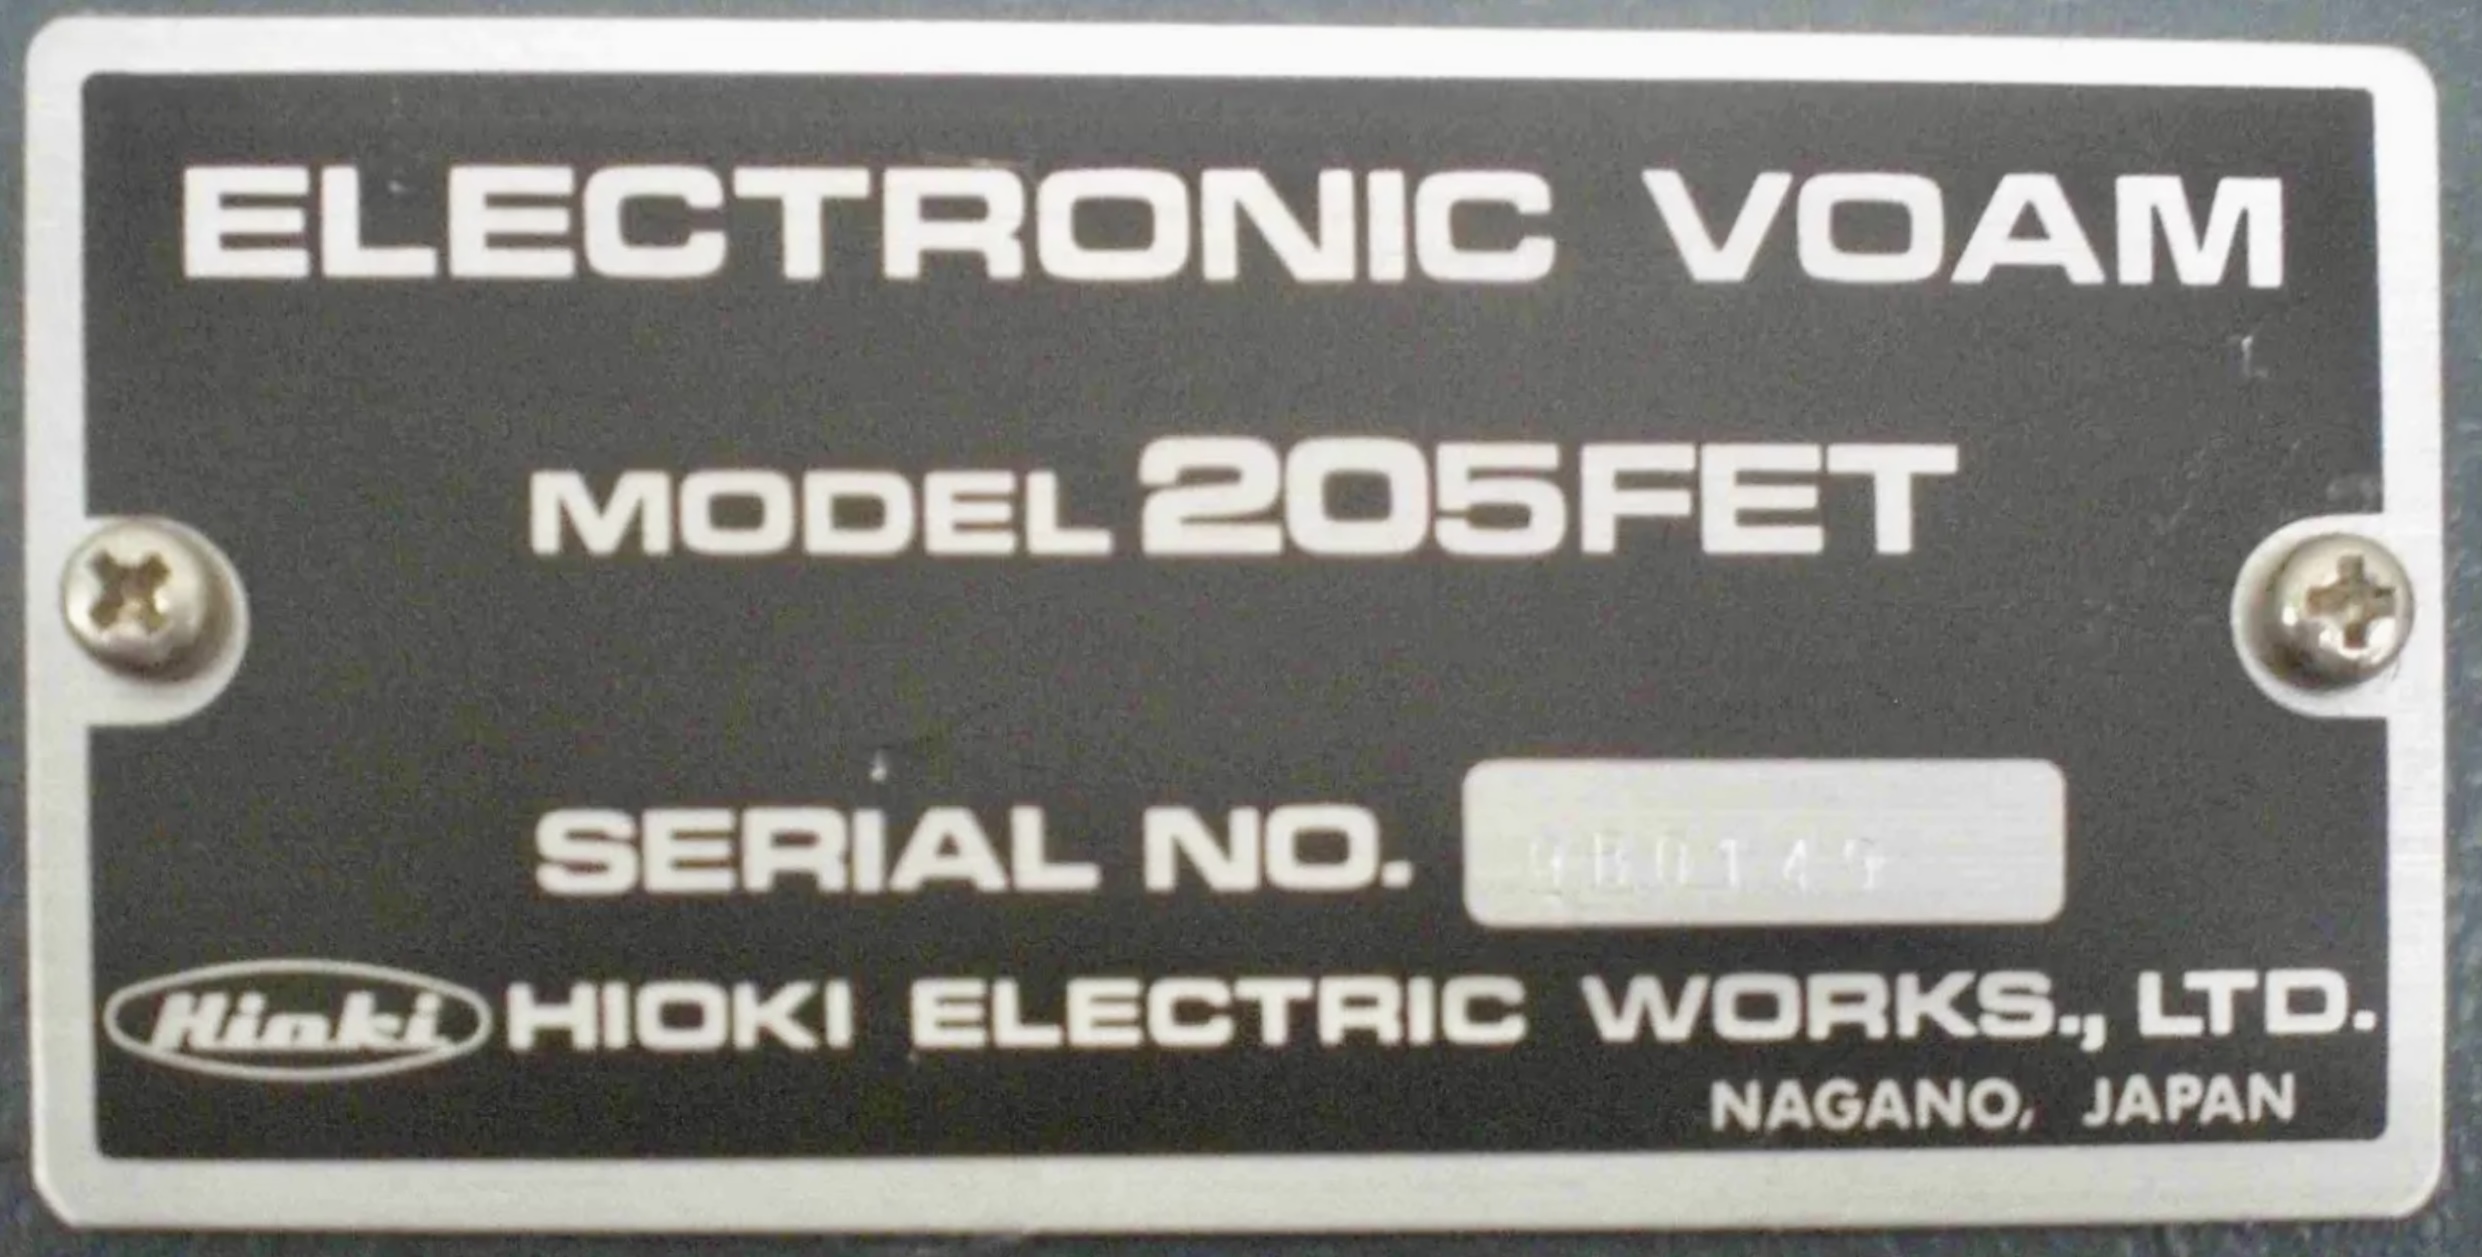 Hioki 205FET Voltmeter